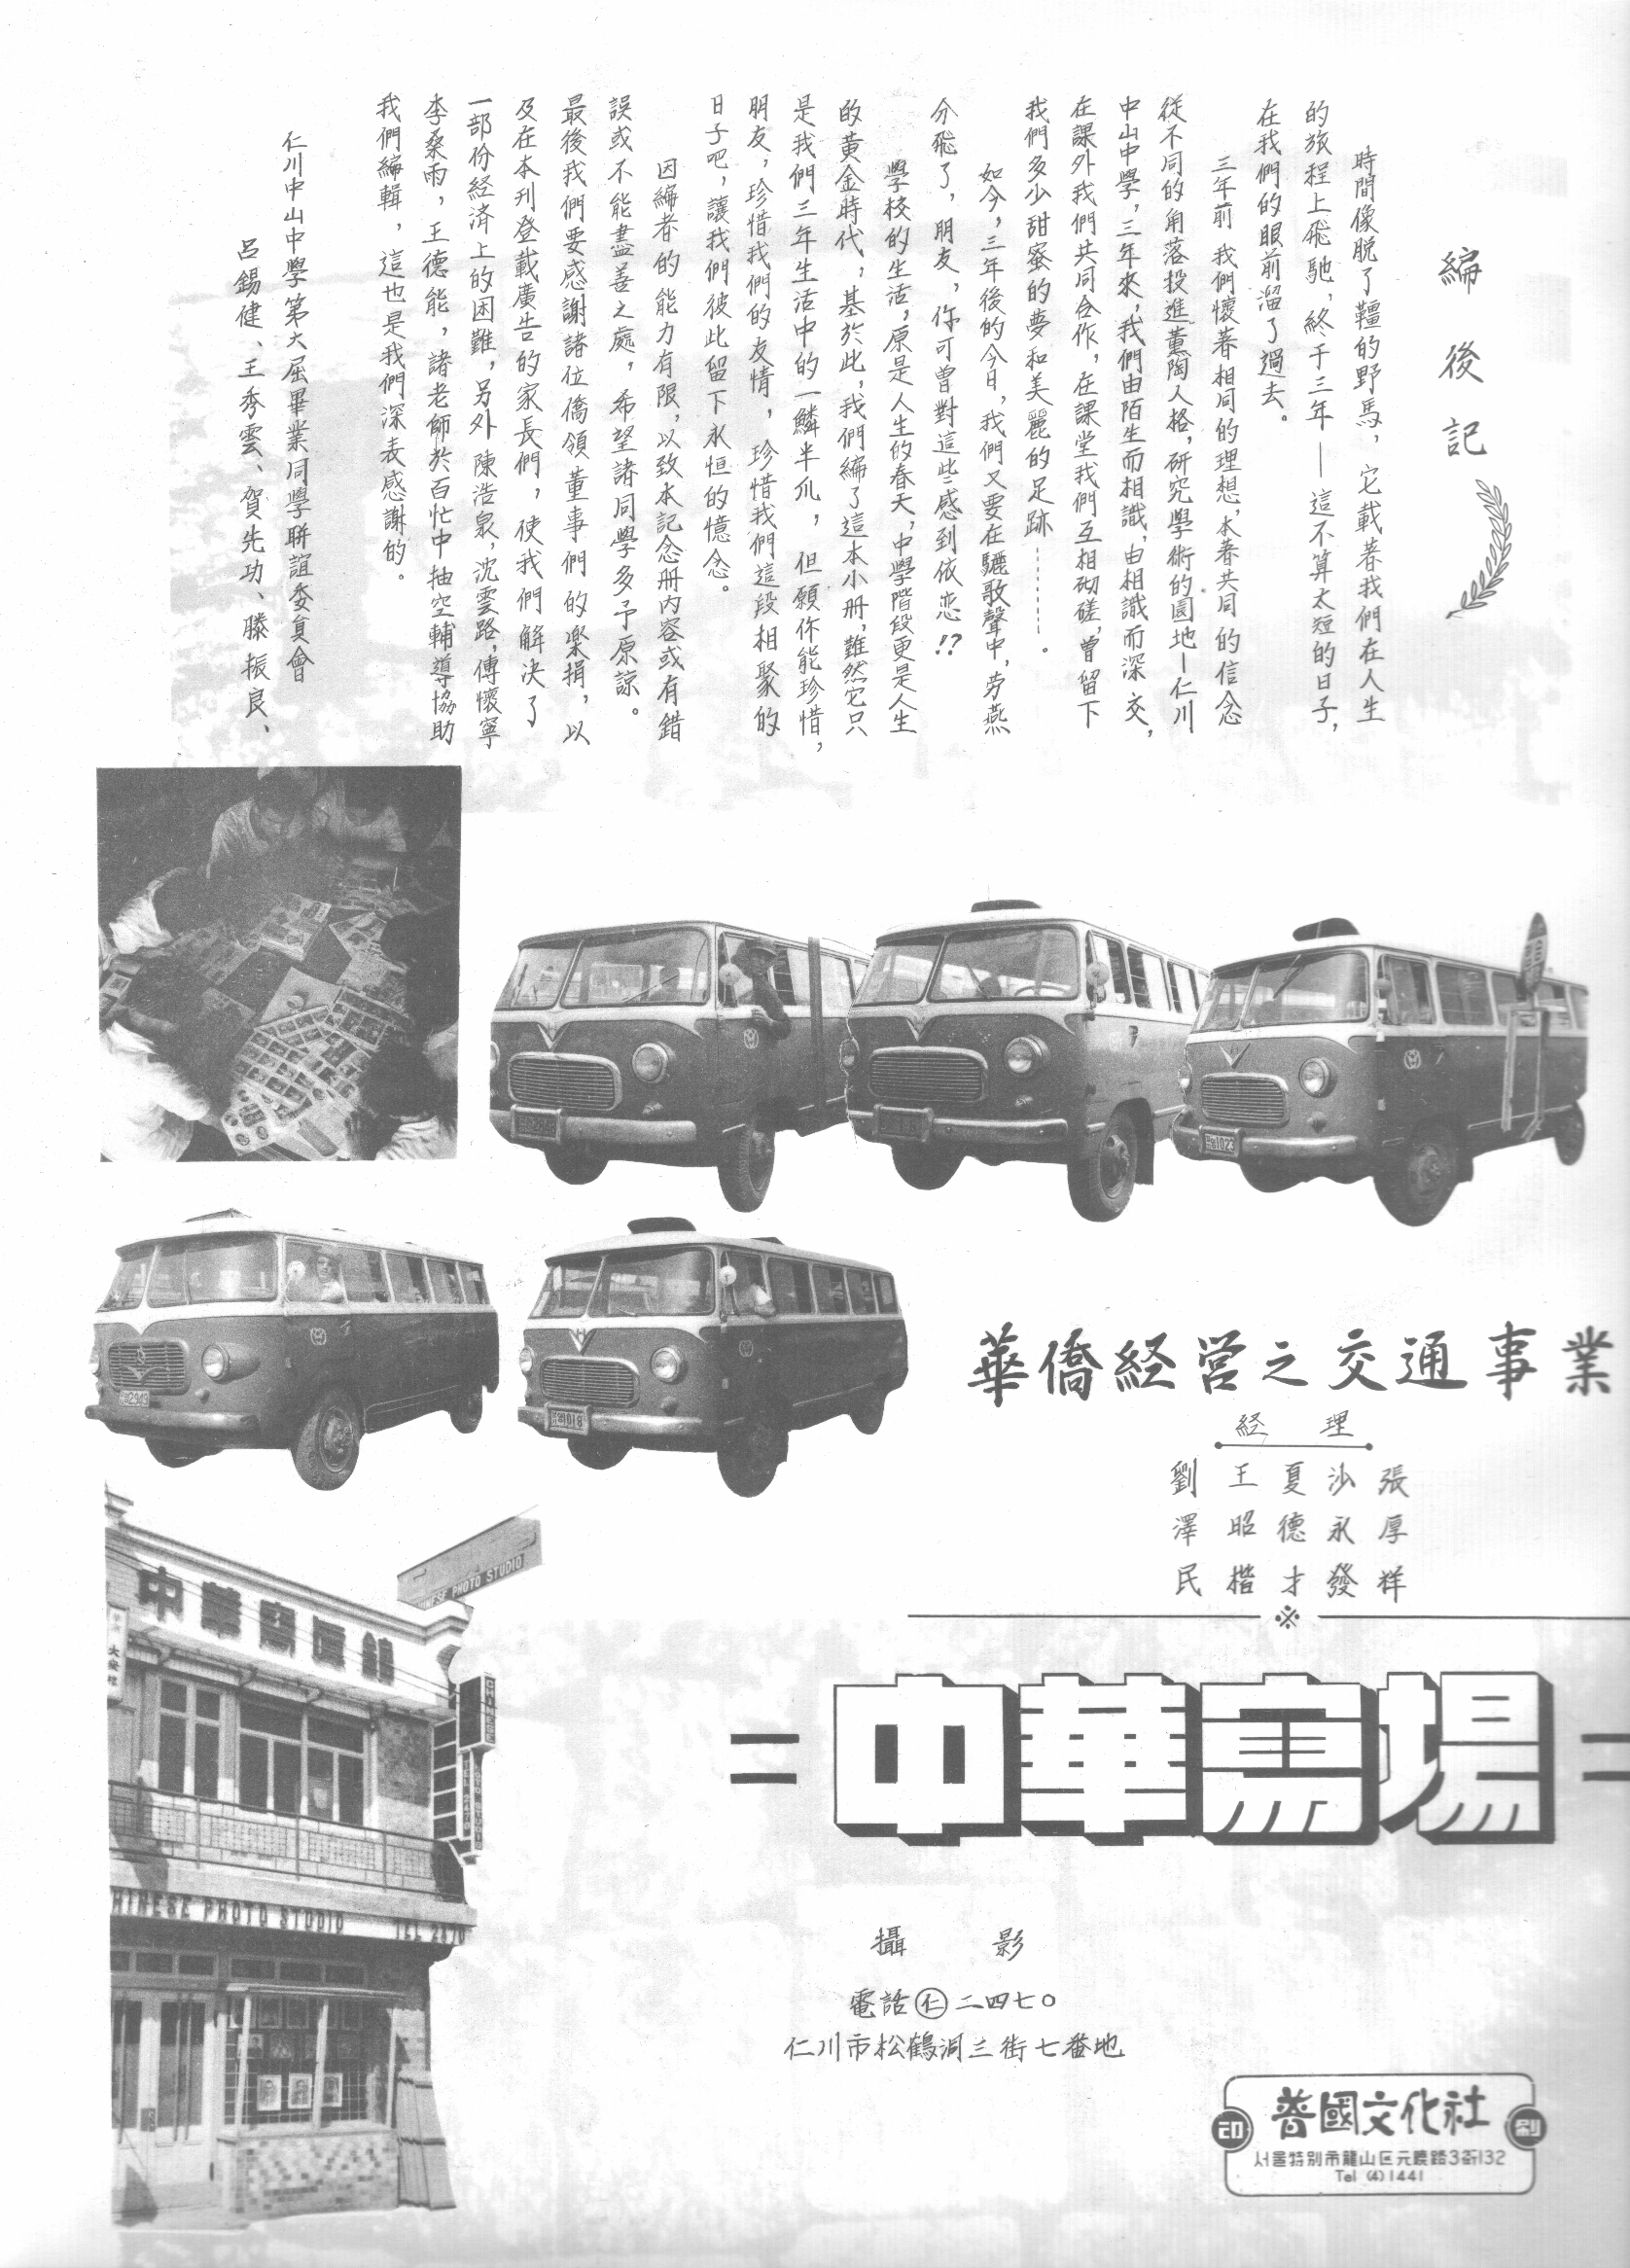 您知道华侨曾参与仁川巴士的经营吗？ 썸네일